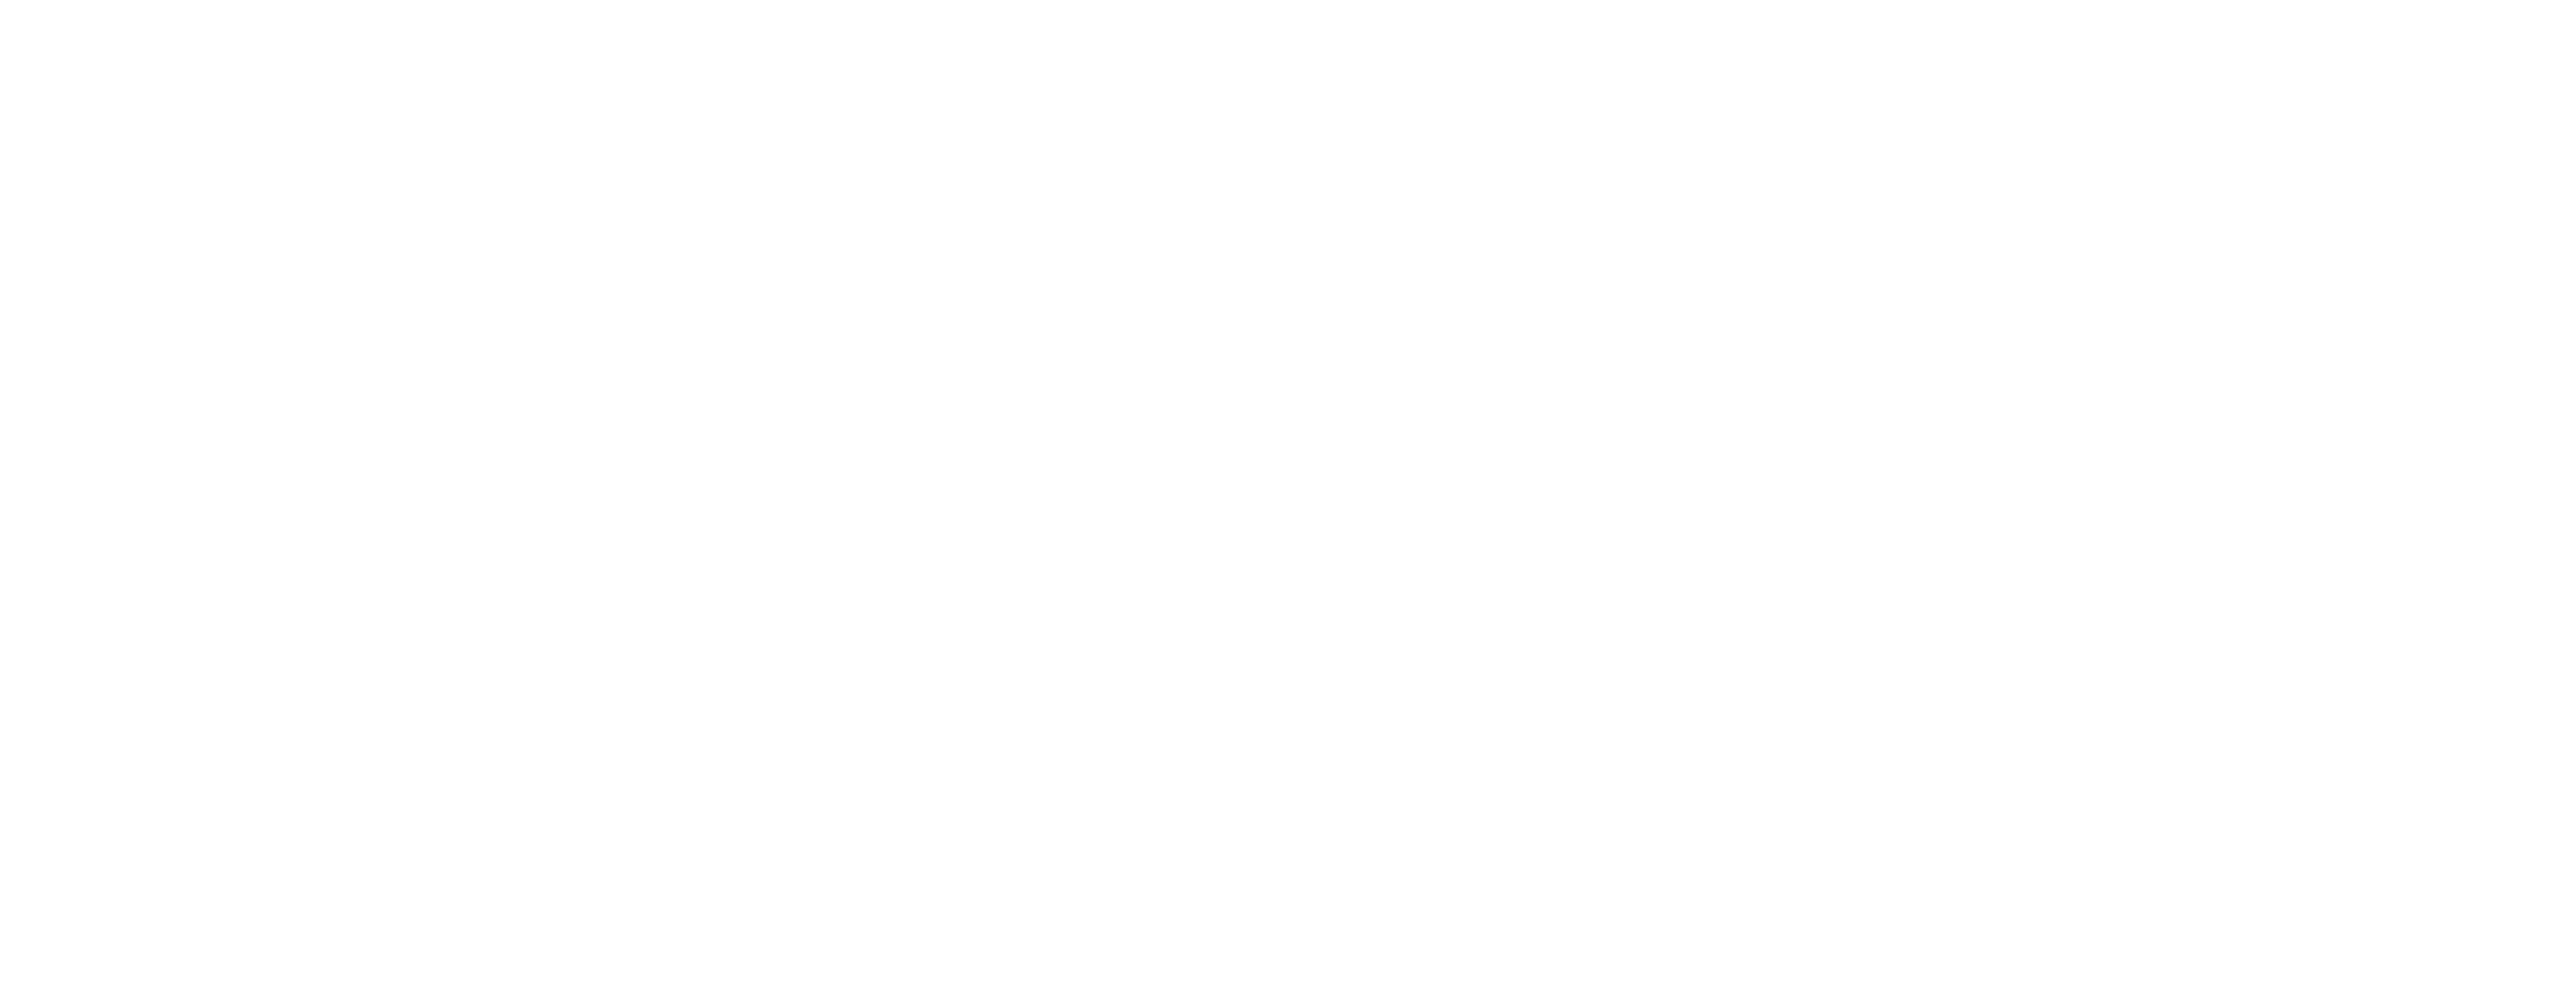 Auhof_logo